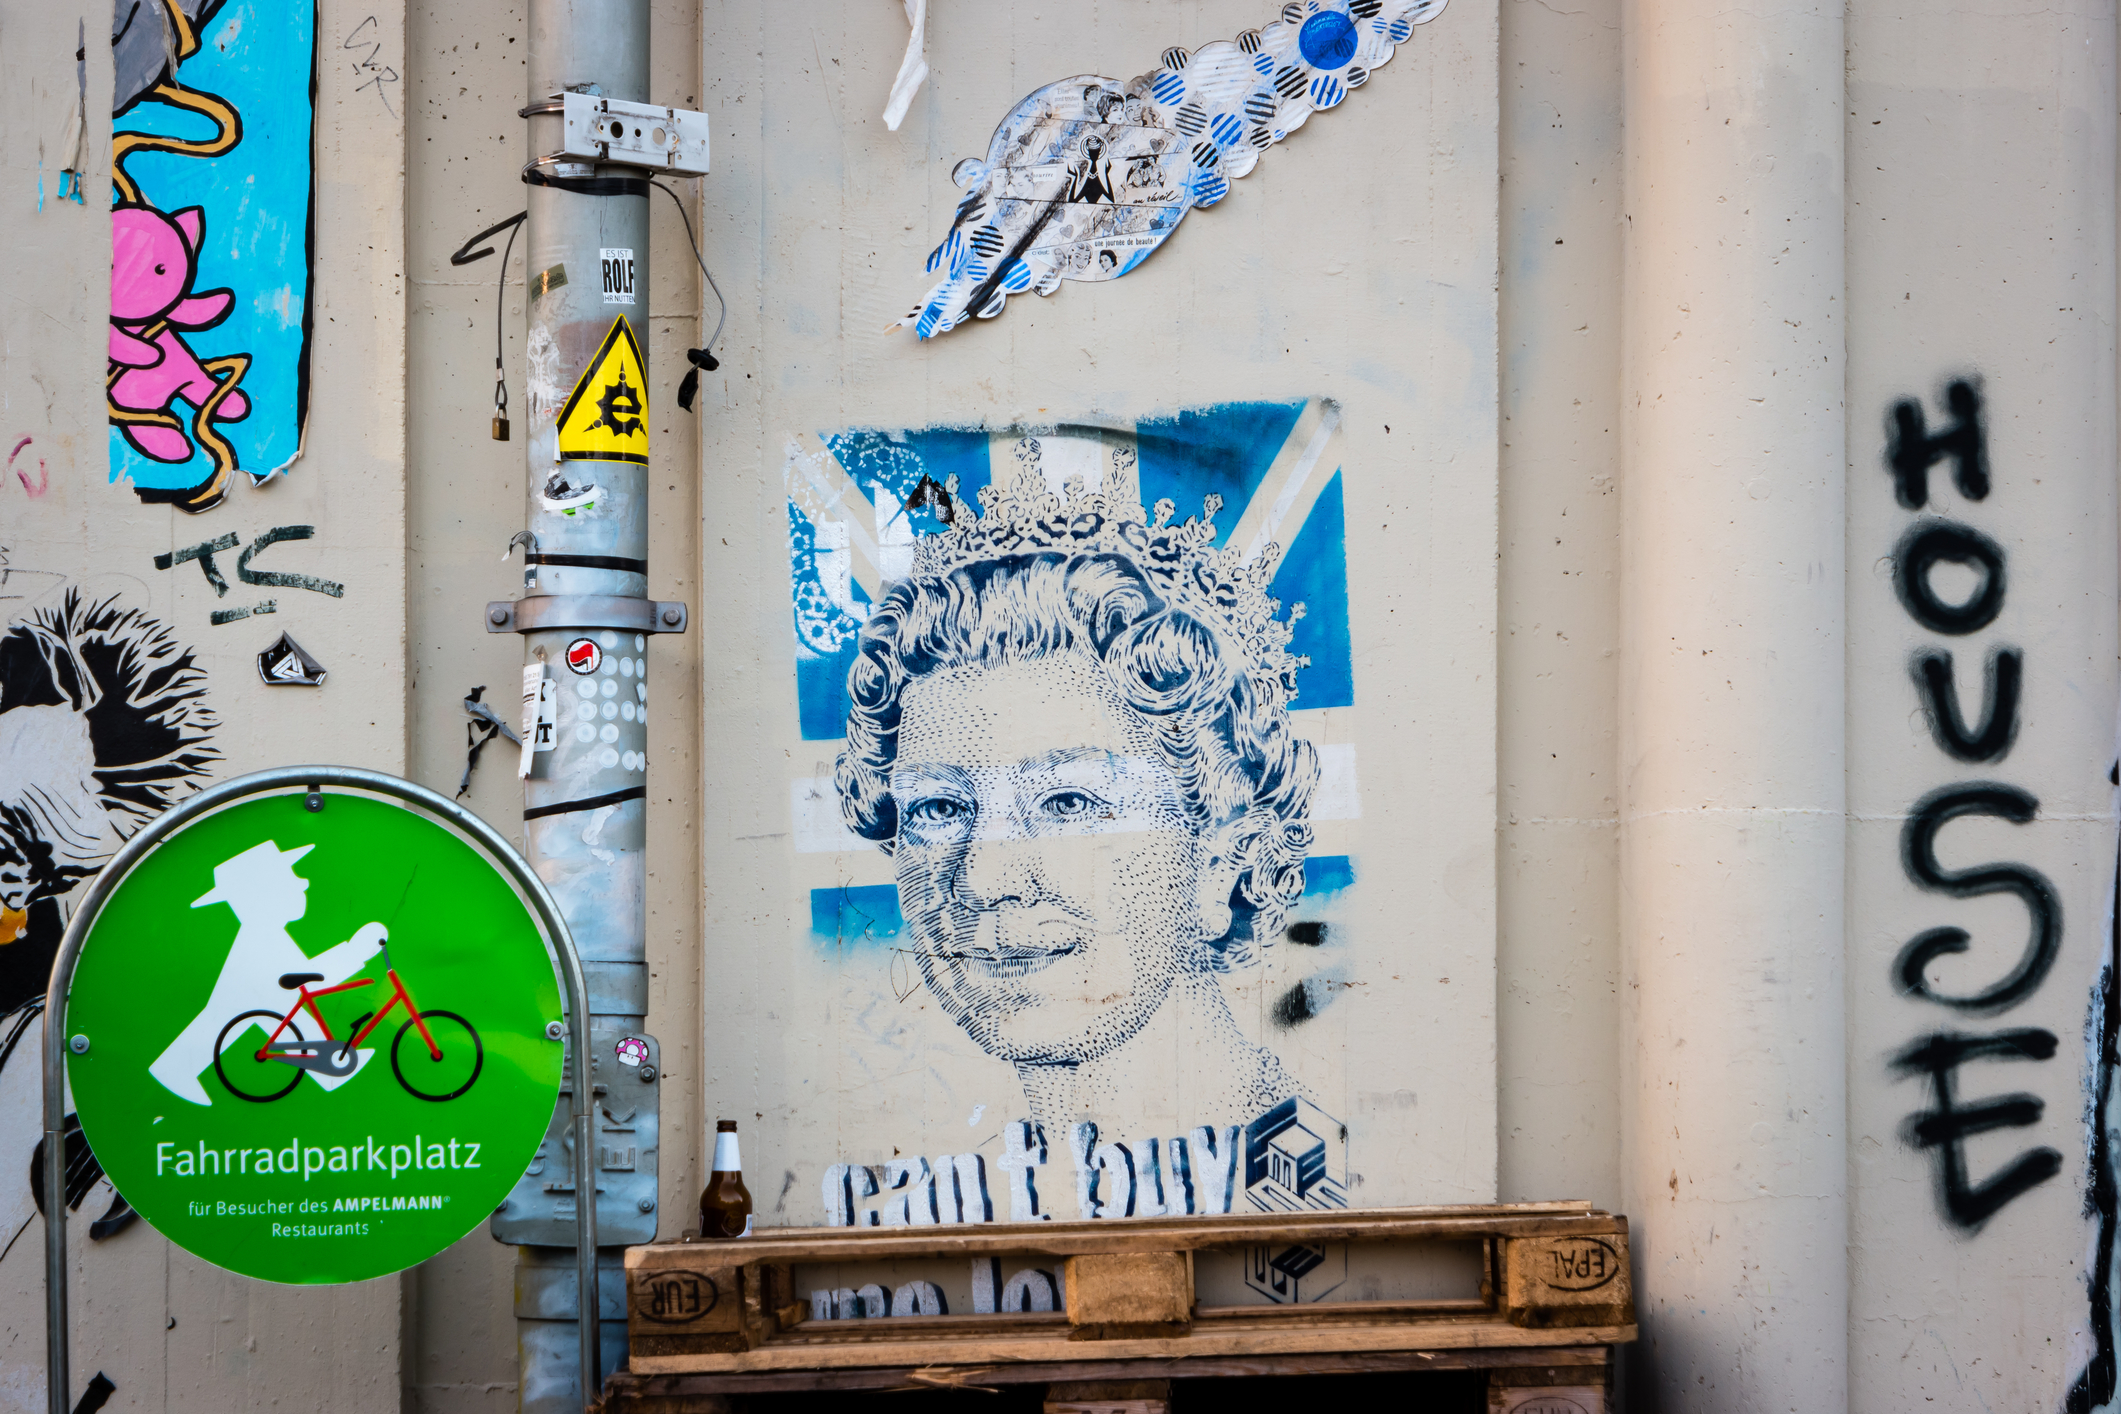 Queen on berlin wall